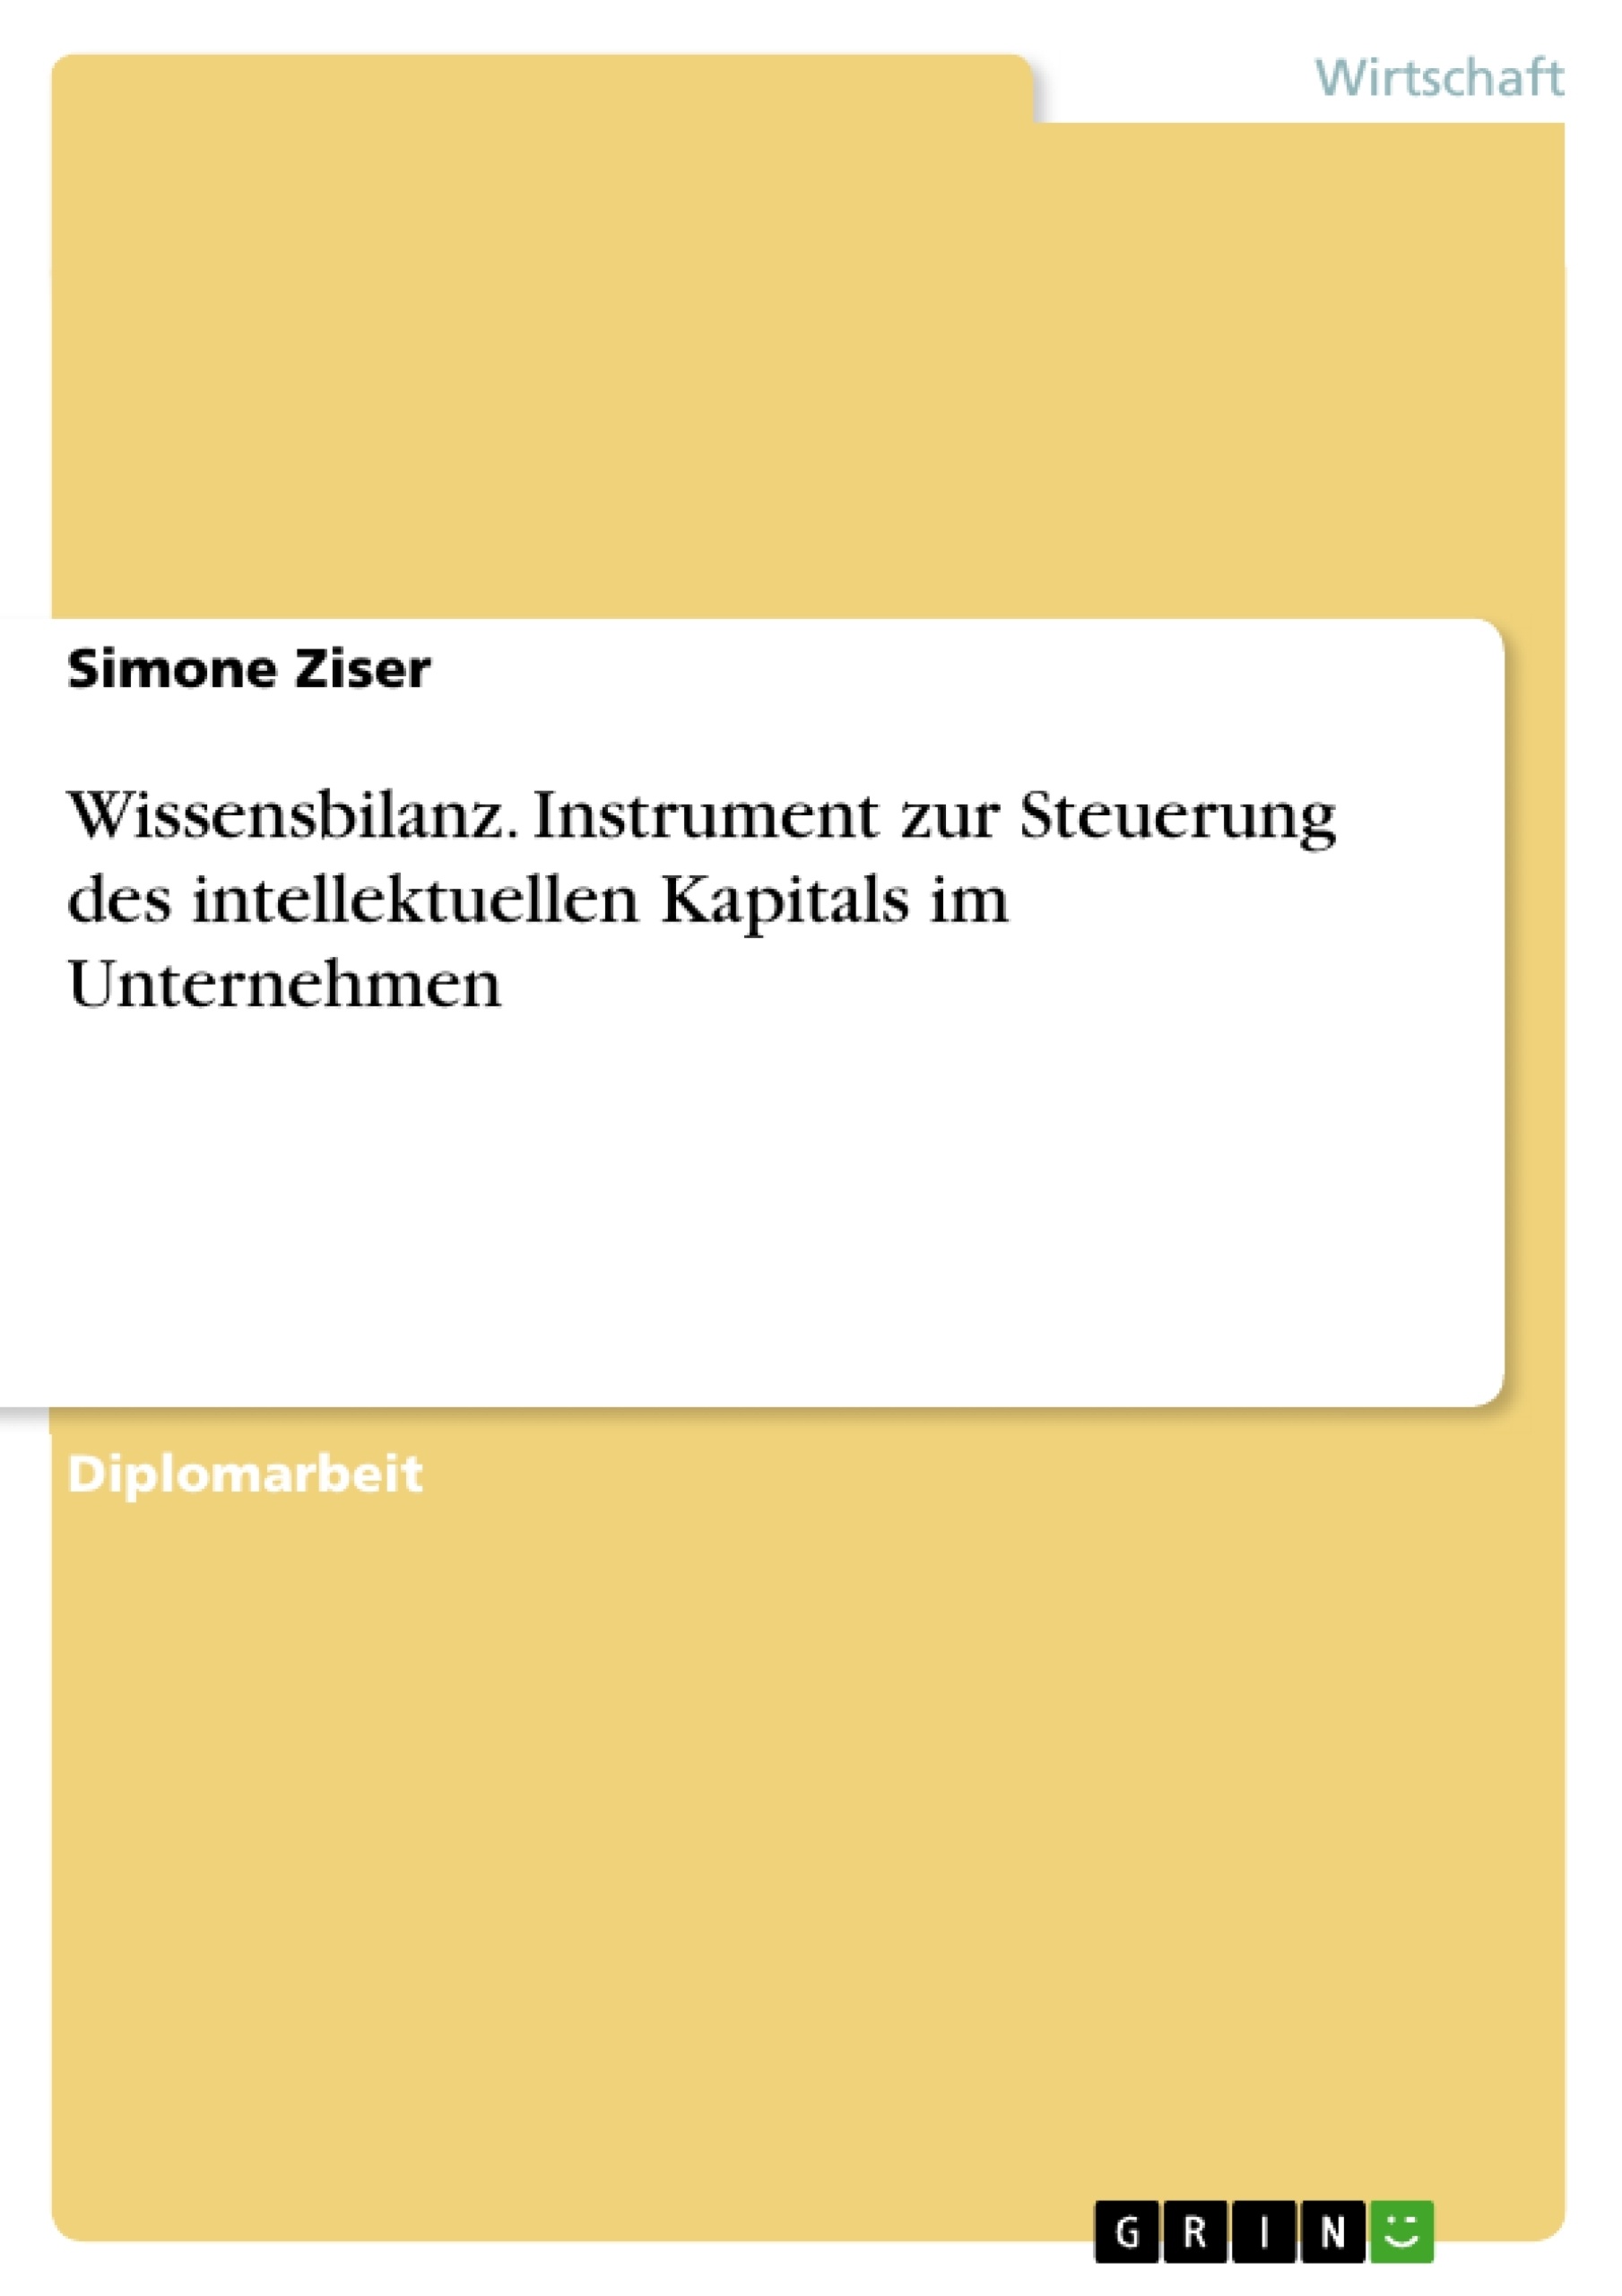 Titre: Wissensbilanz. Instrument zur Steuerung des intellektuellen Kapitals im Unternehmen